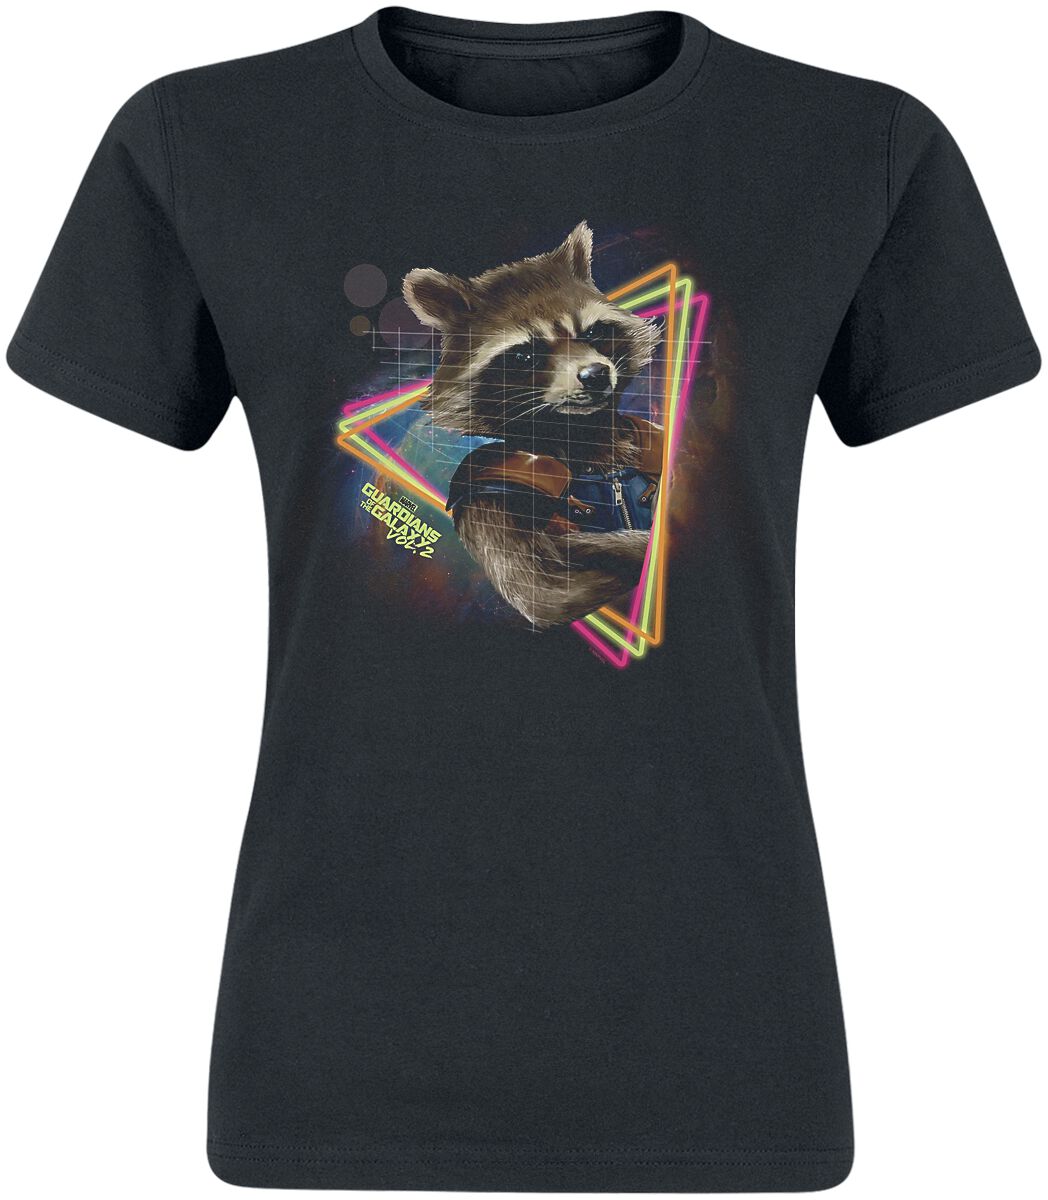 T-Shirt Manches courtes de Les Gardiens De La Galaxie - Neon Rocket - S à XXL - pour Femme - noir